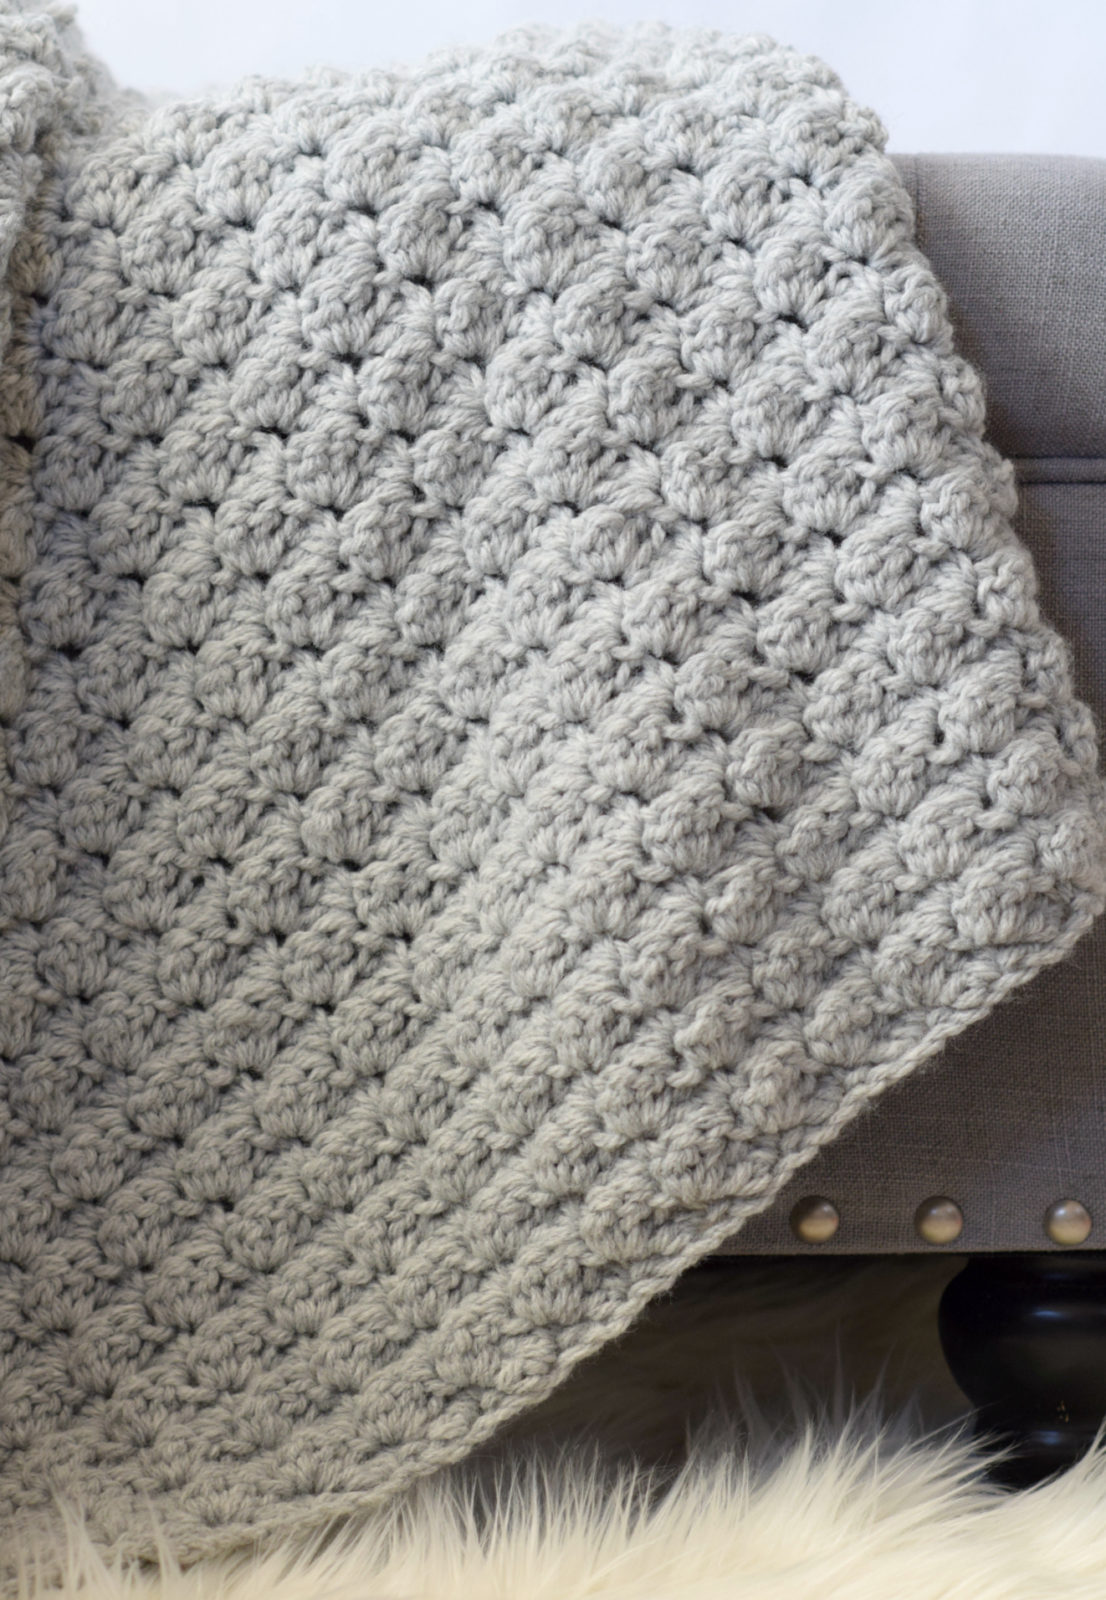 Basic Easy Crocheted Blanket Pattern 1 